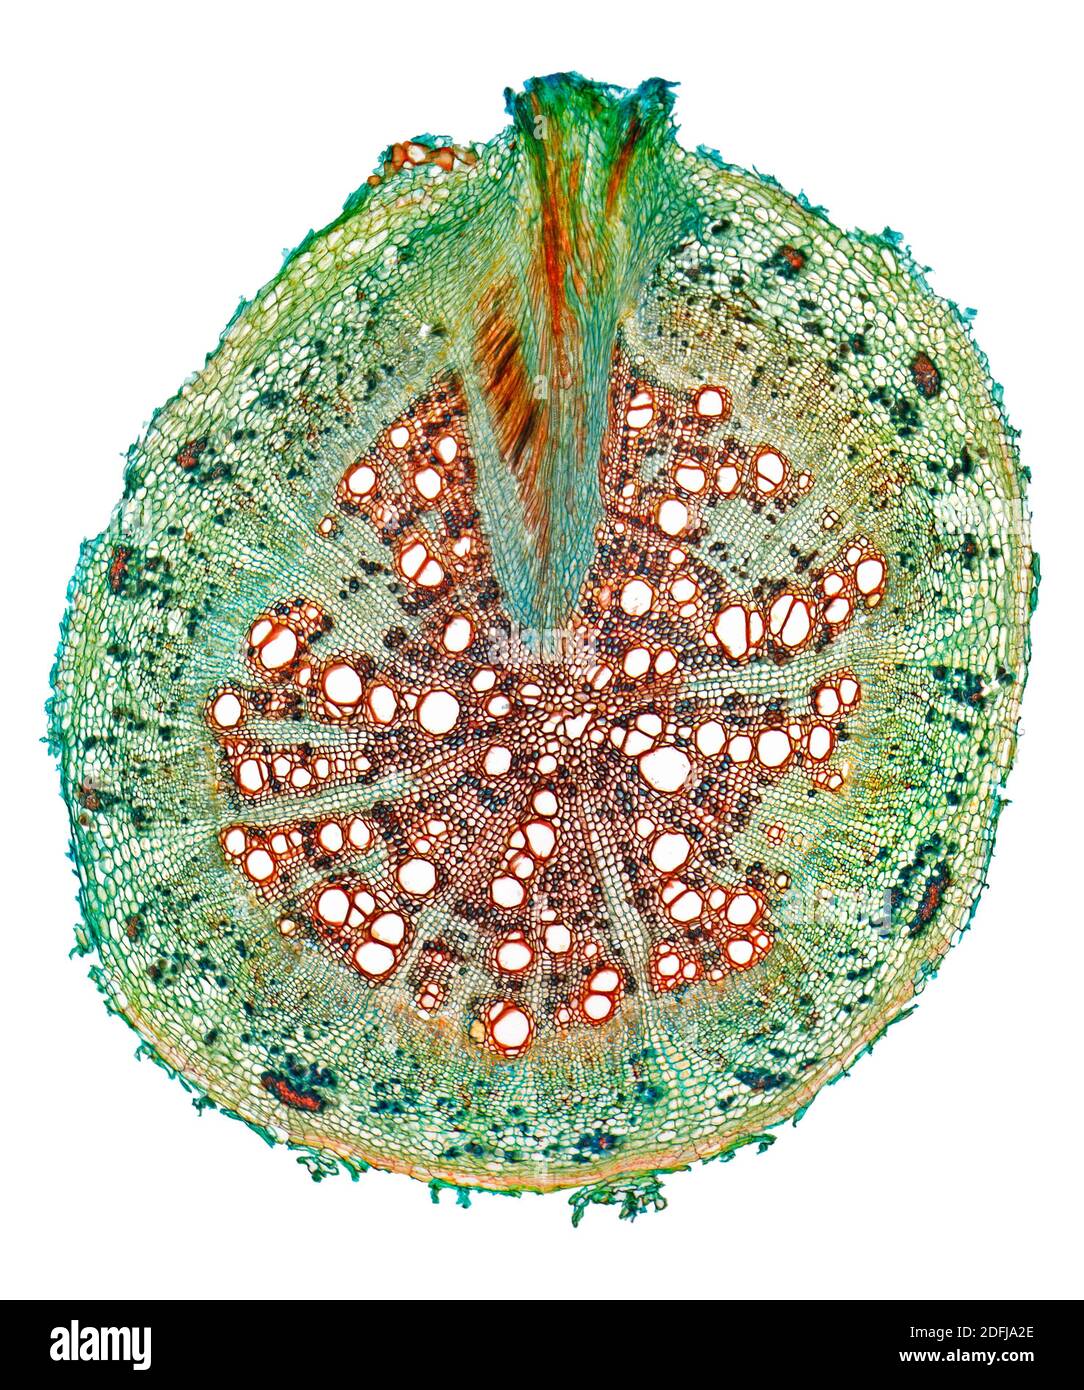 Haricot mung, Vigna radiata, racine TS, section colorée, photomicrographe à fond clair Banque D'Images